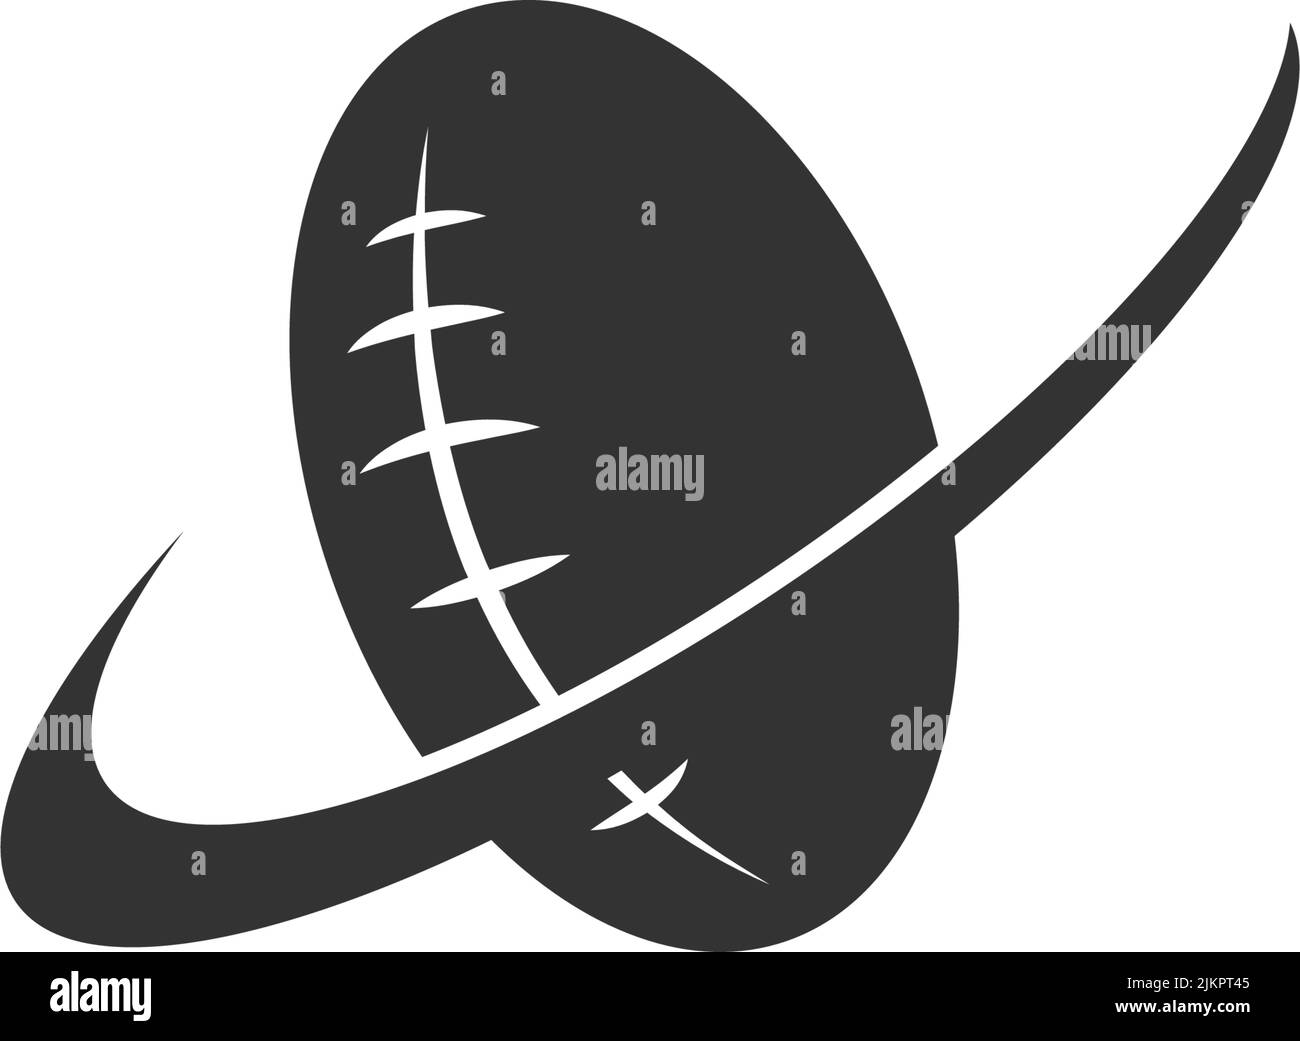 Vorlage zur Illustration des Rugby-Ball-Symbols im Design Stock Vektor